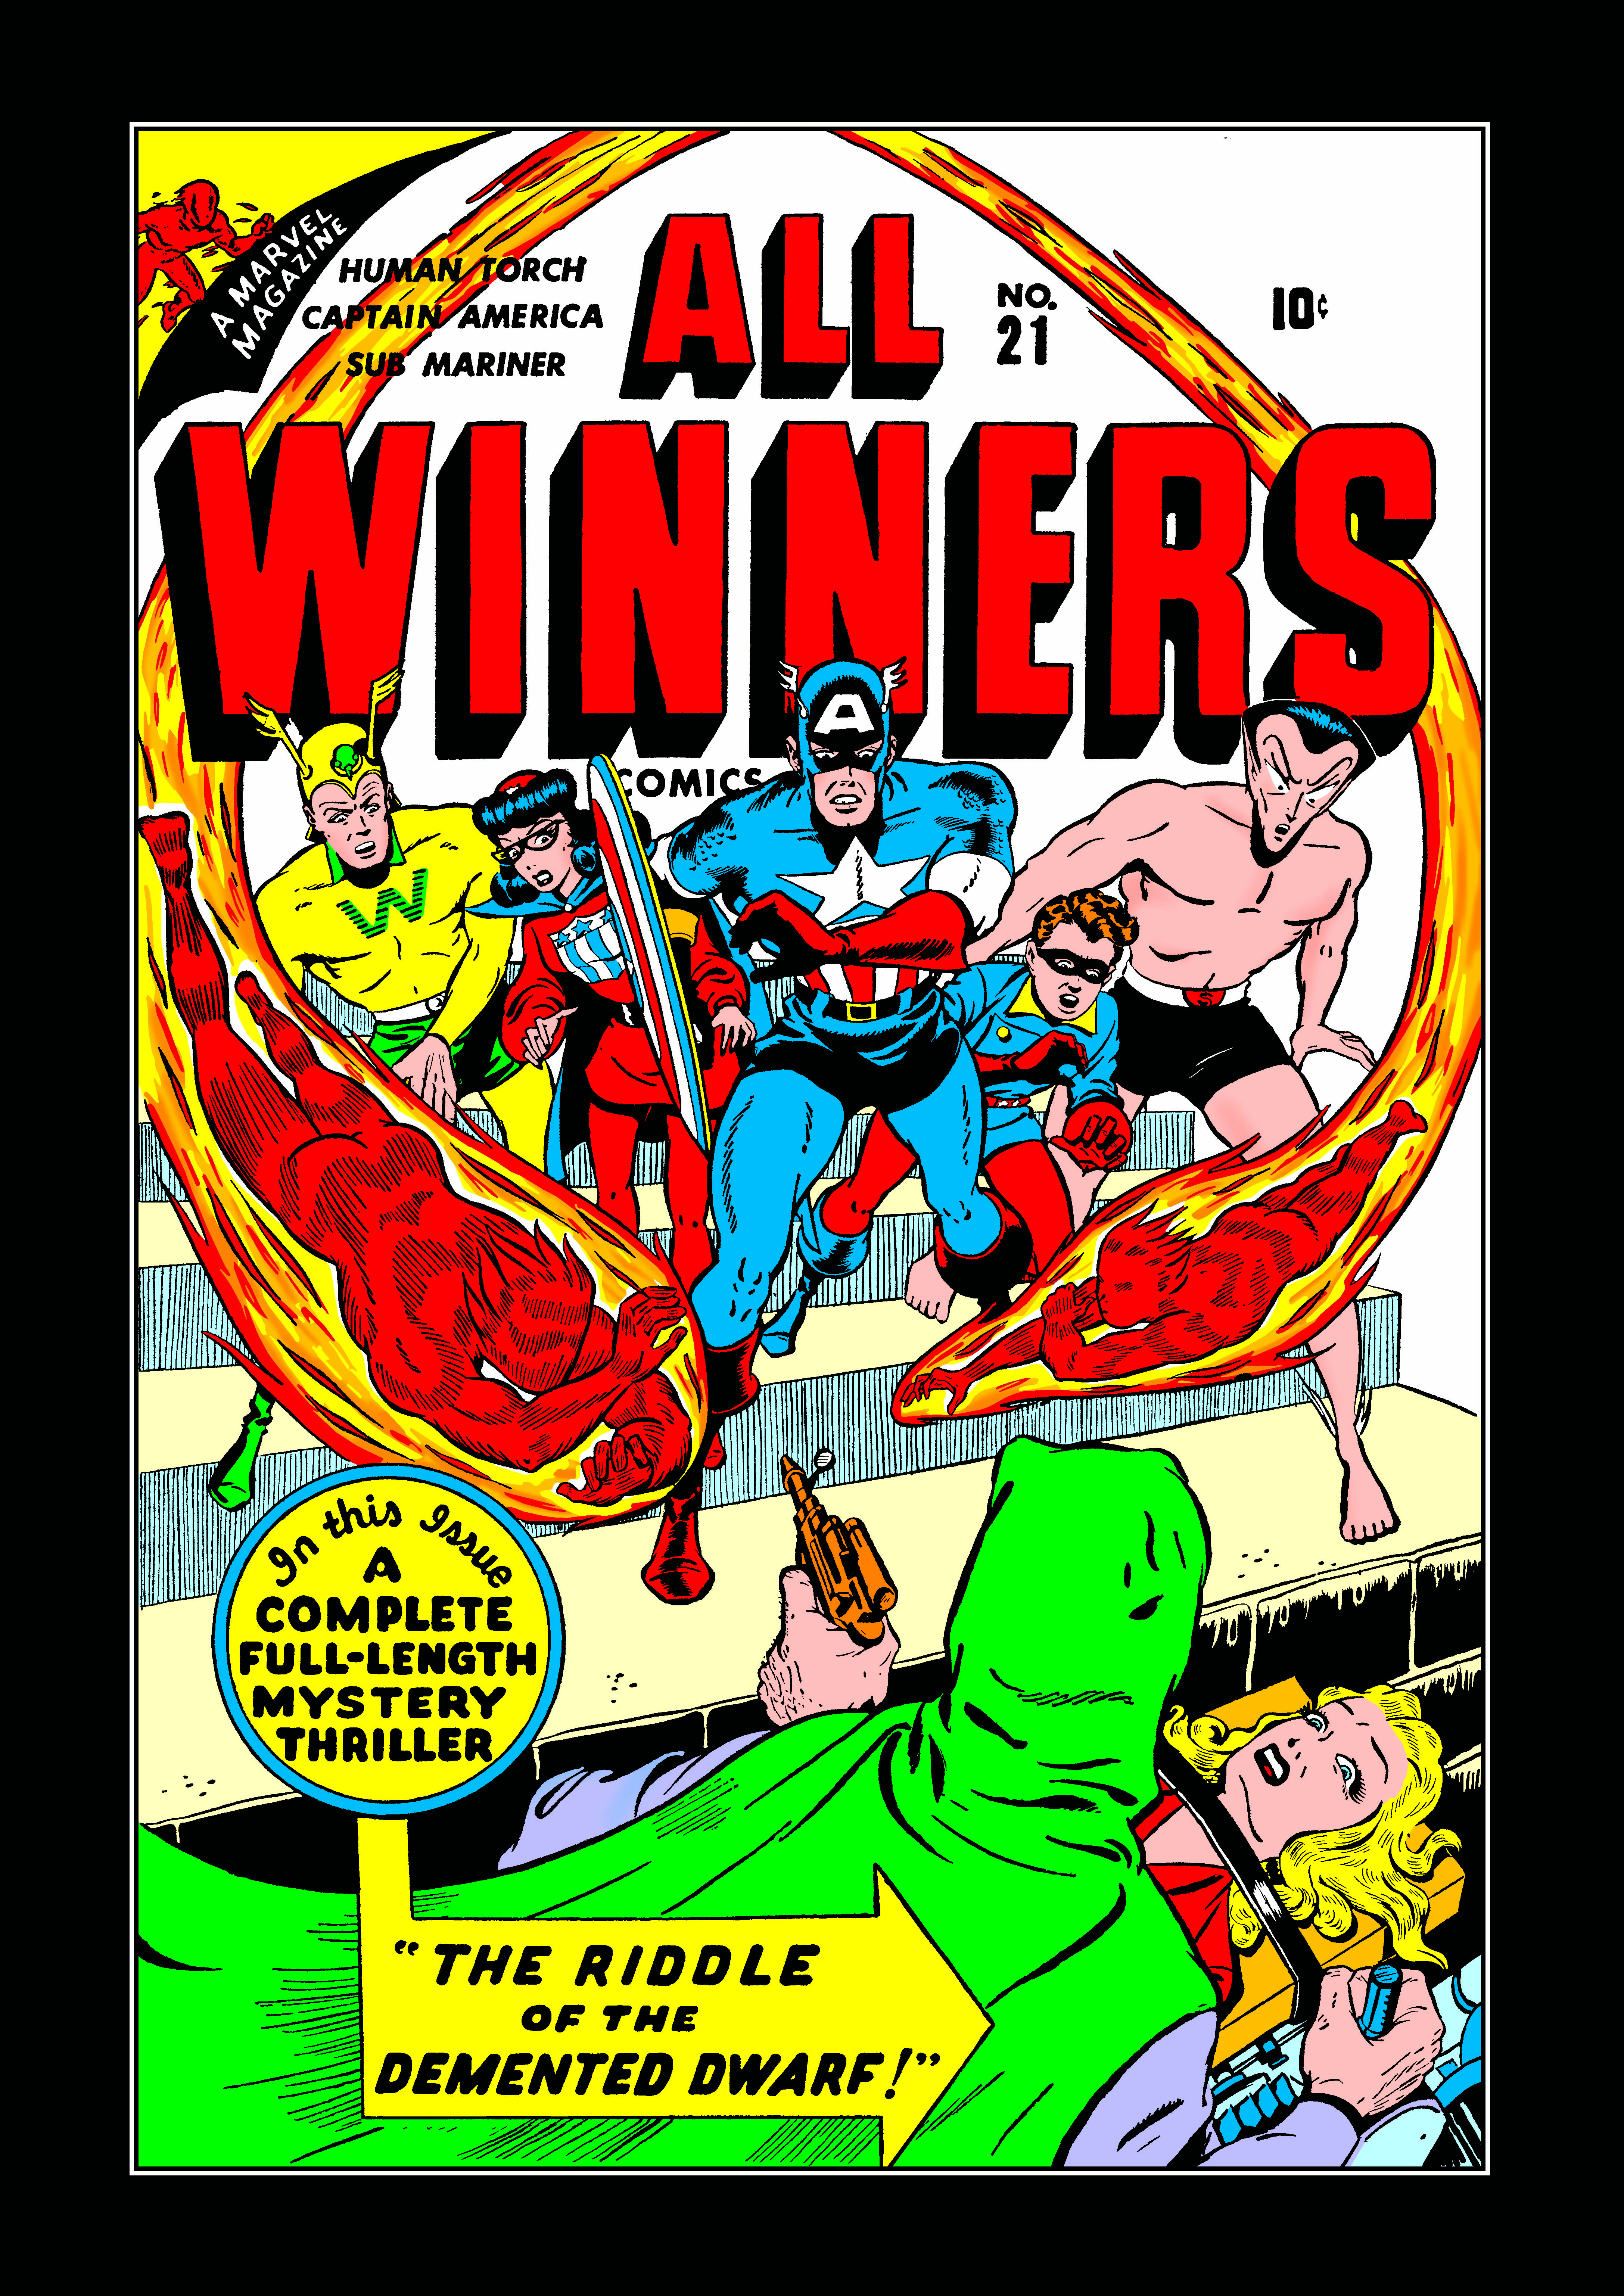 All-Winners Comics (1941) #21